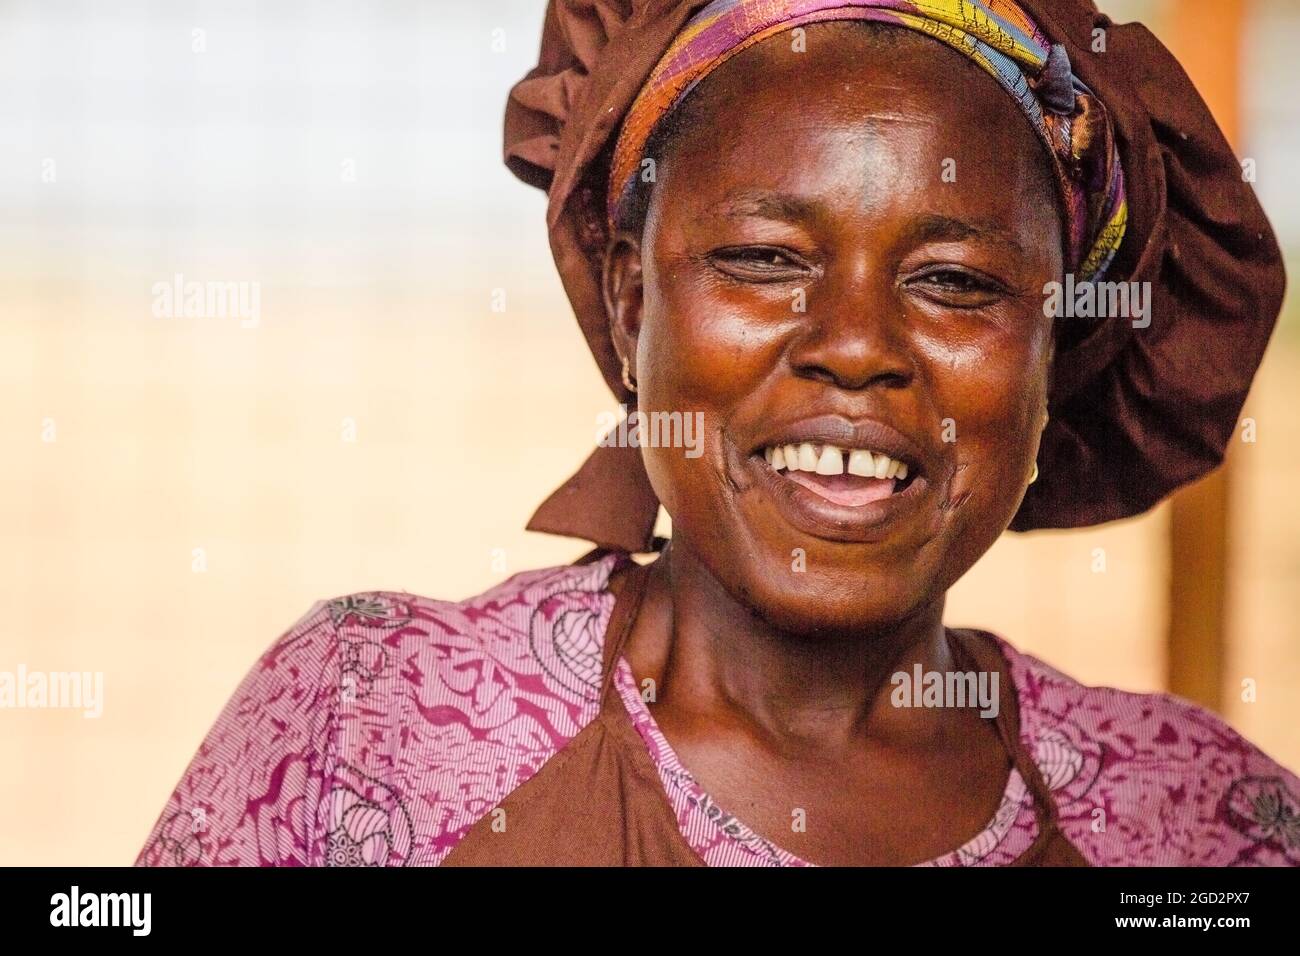 Gros plan d'une femme souriante de village d'Afrique de l'Ouest ca. 21 février 2018 Banque D'Images